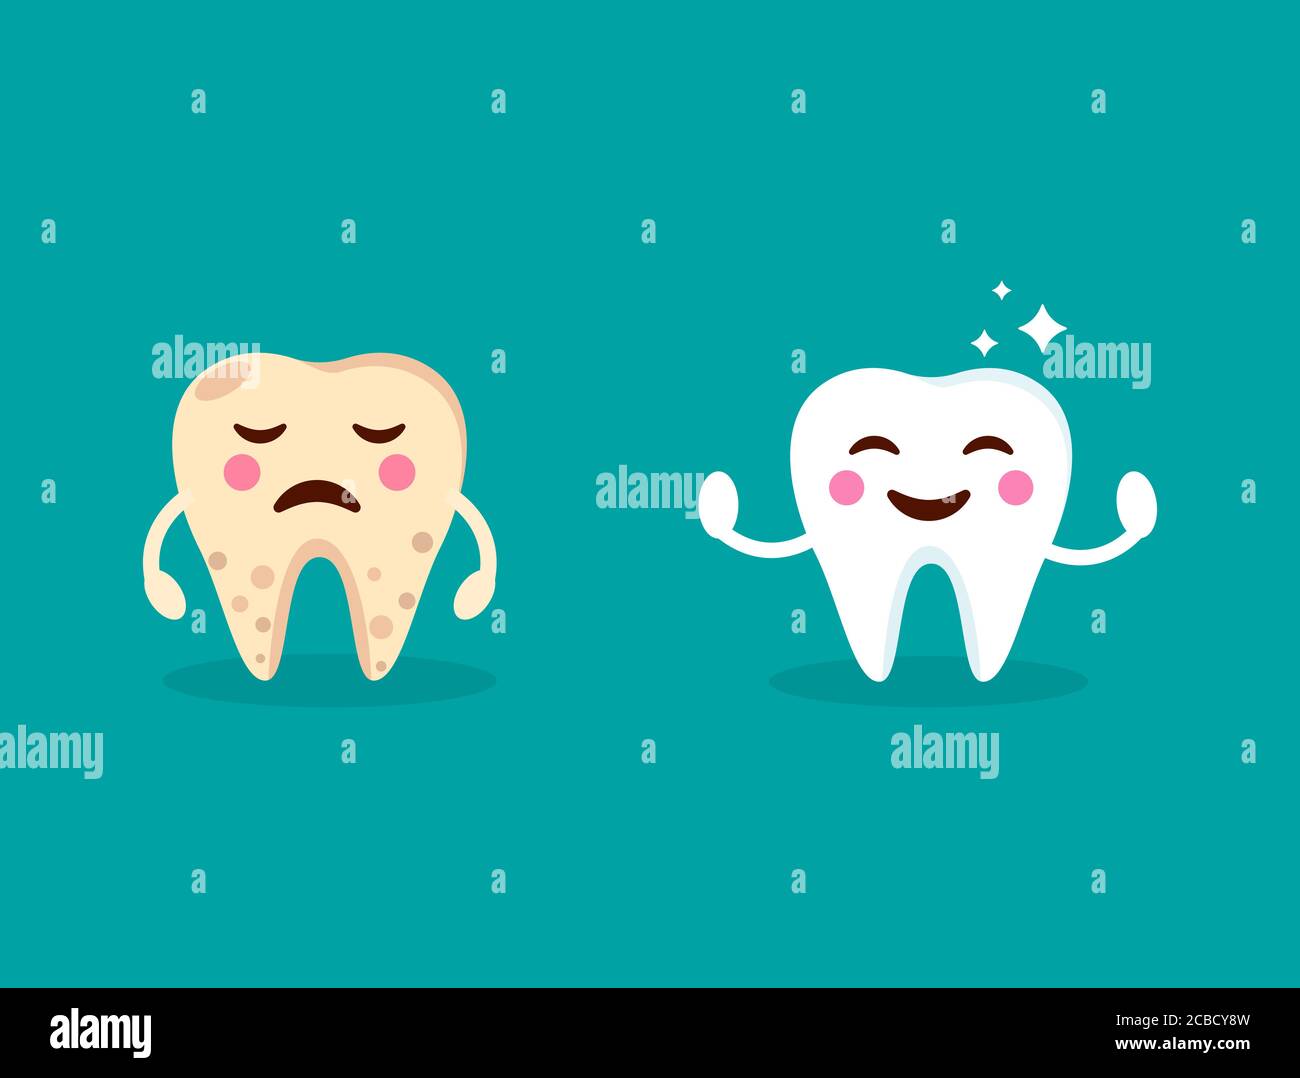 Gesunde lächelnde Zähne mit leuchtenden Sternen. Weinender gelber schlechter kranker Zahn. Zahnpflege-Design. Niedliche Zahn mit glücklich und traurig emoji. Zahnklinik Konzept. Stock Vektor